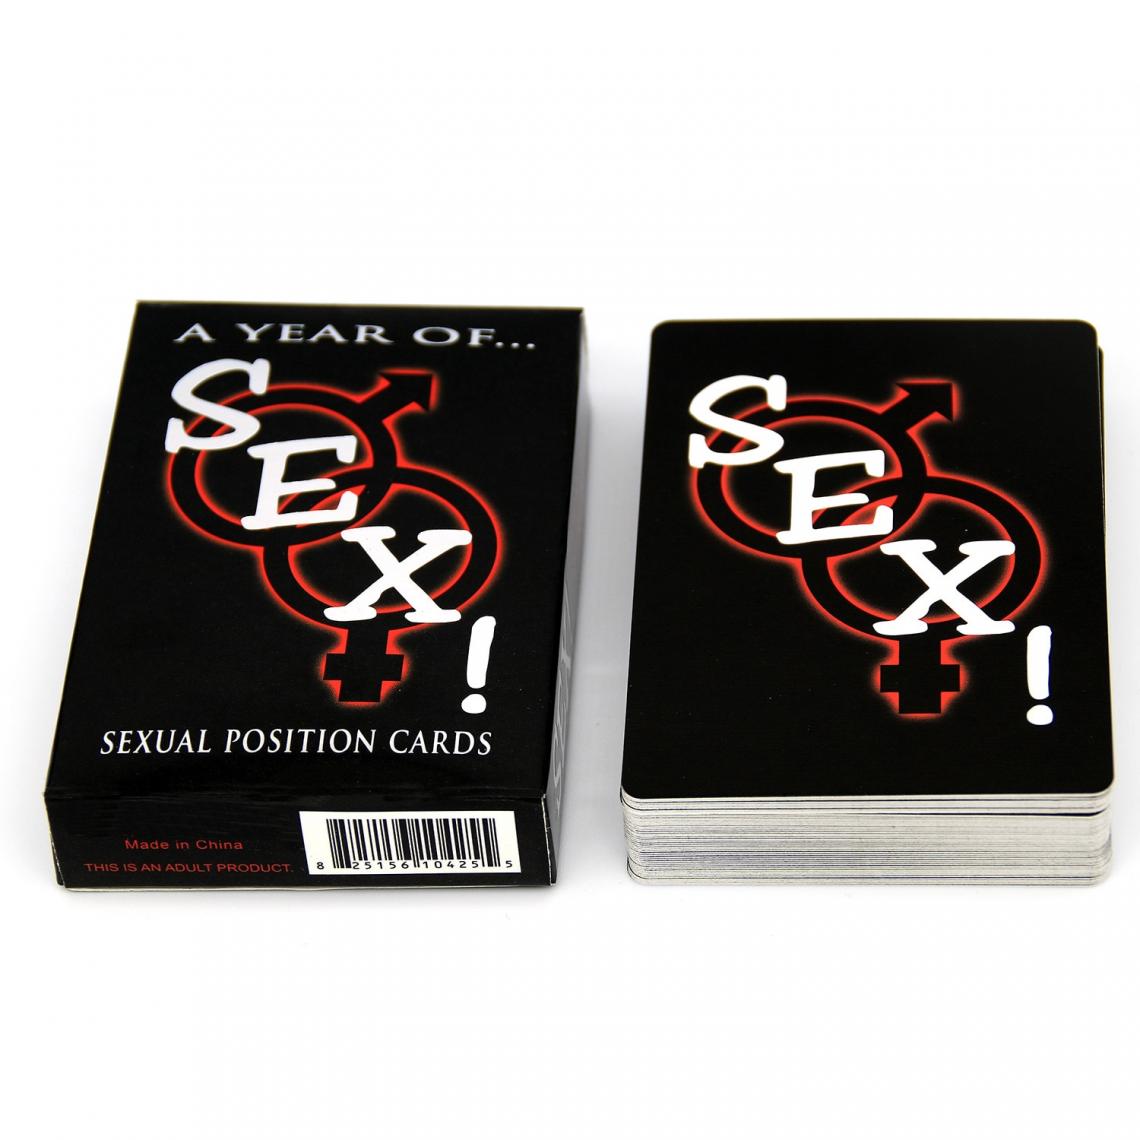 Universal - Sexe humoristique en adulte jeu sexy jeu de cartes pour couple sexe horloge |(Le noir) - Jeux de cartes